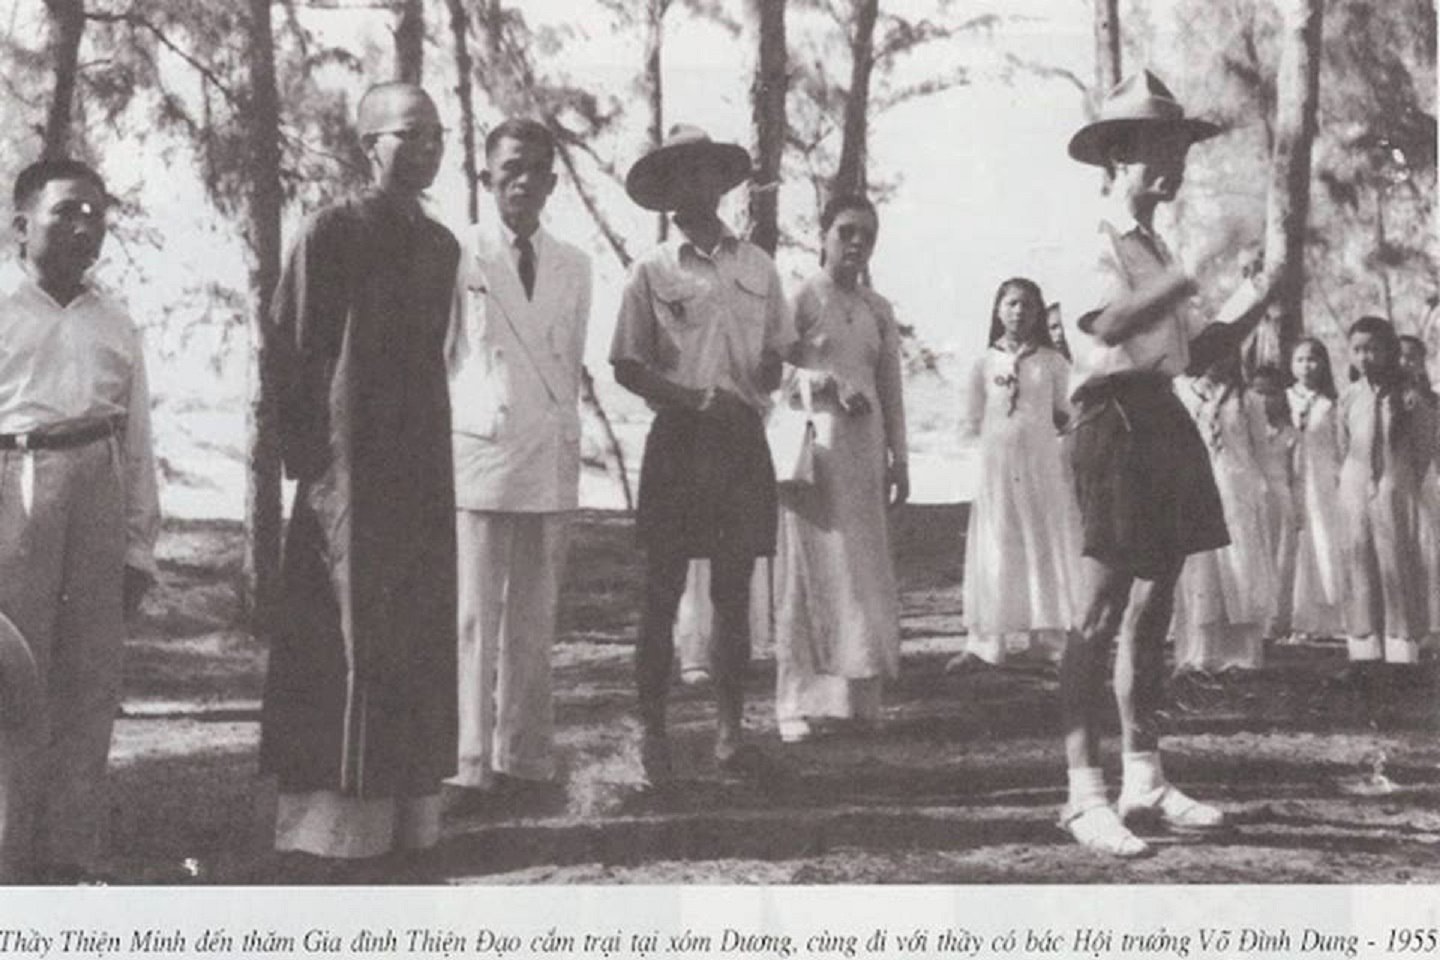 Thầy Thiện Minh đến thăm gia đình Thiện Đạo cắm trại tại xóm Dương, cùng đi với Thầy có bác hội trưởng Võ Đình Dung - 1955